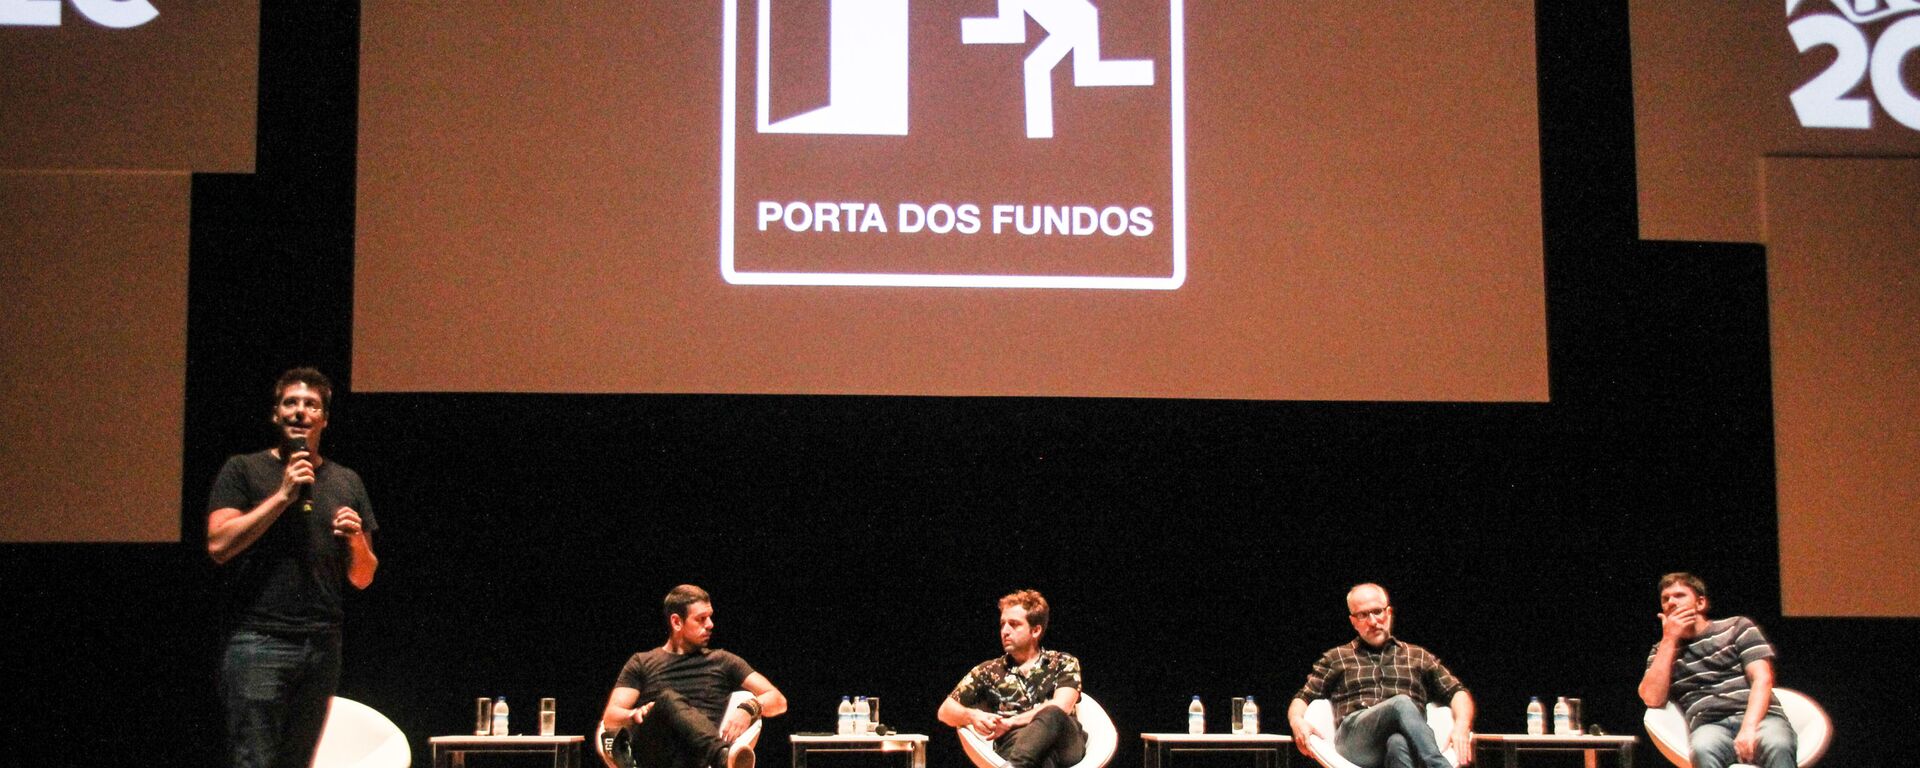 Grupo Porta dos Fundos participa de painel no Rio Creative Conference (Rio2C), 7 de abril de 2018 (foto de arquivo)  - Sputnik Brasil, 1920, 16.01.2021